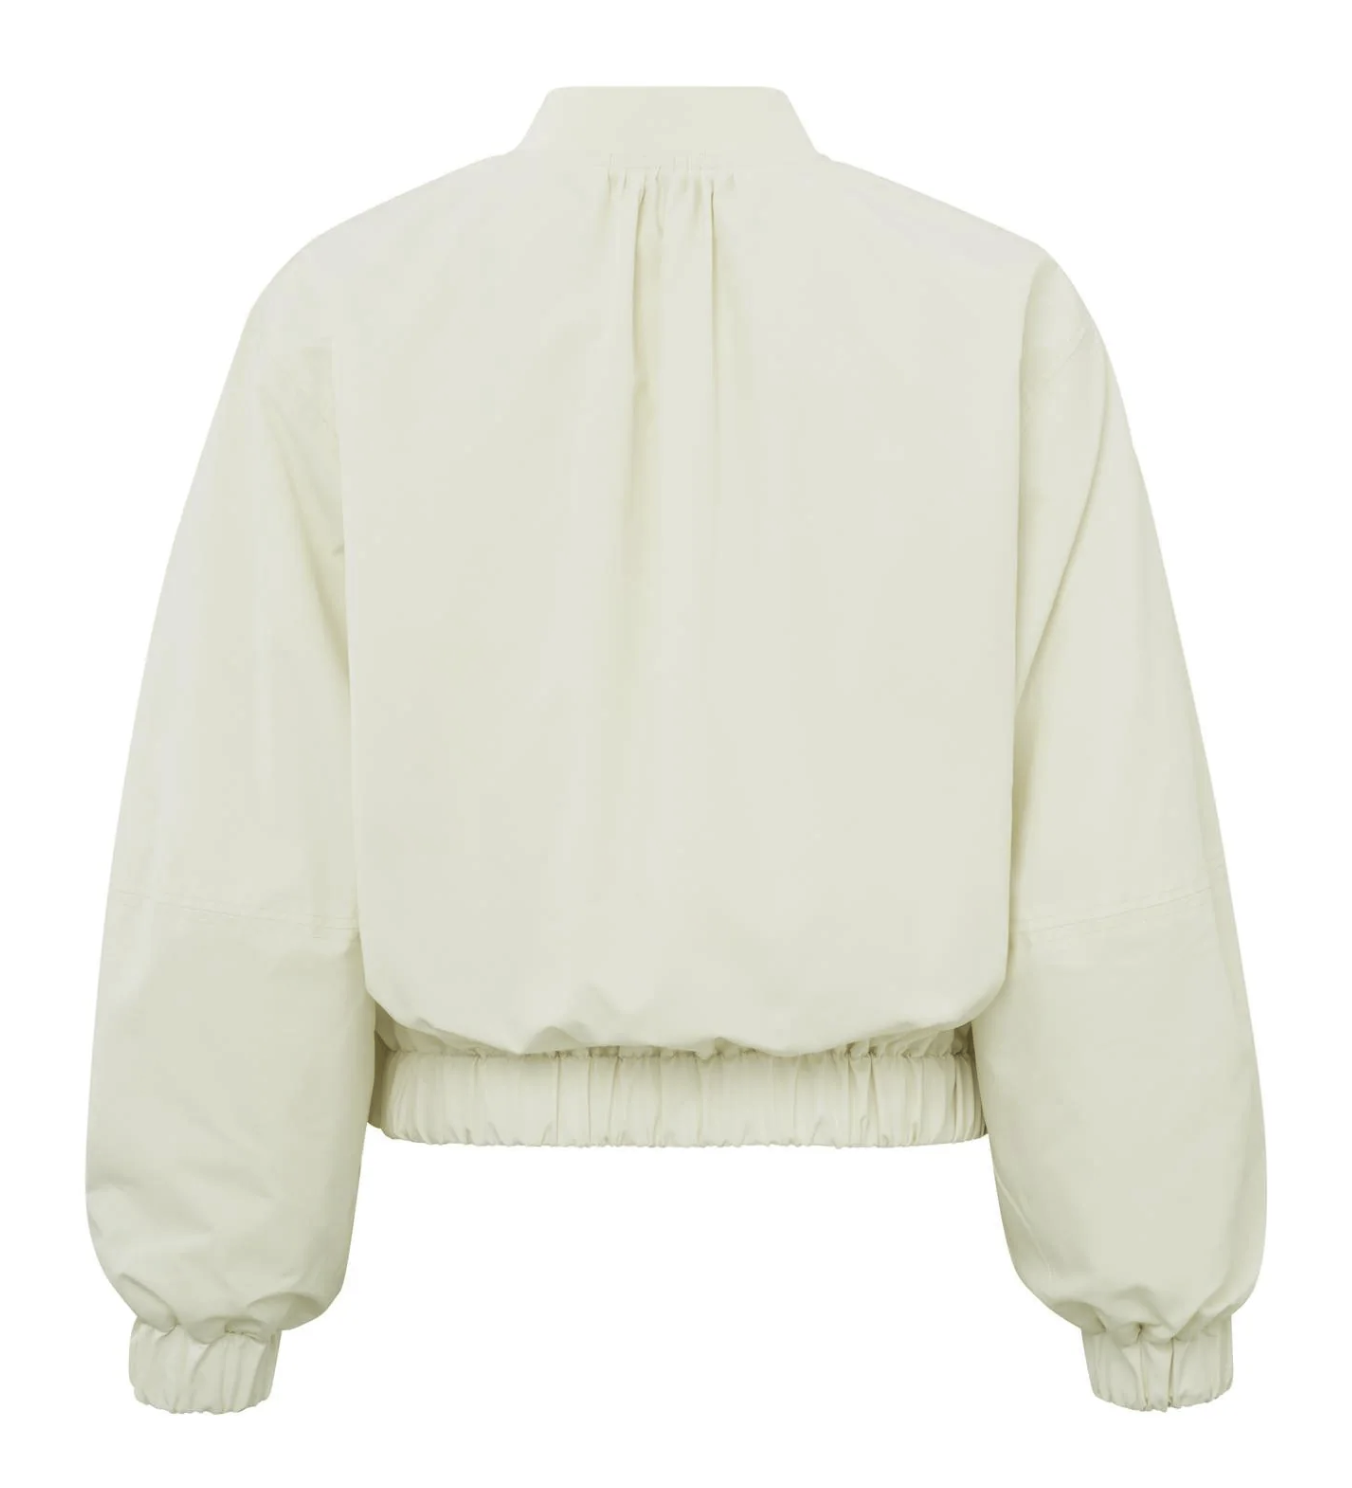 YAYA Bomber Jas | Bomber Jacket Oversized Puffed Sleeves Wool White